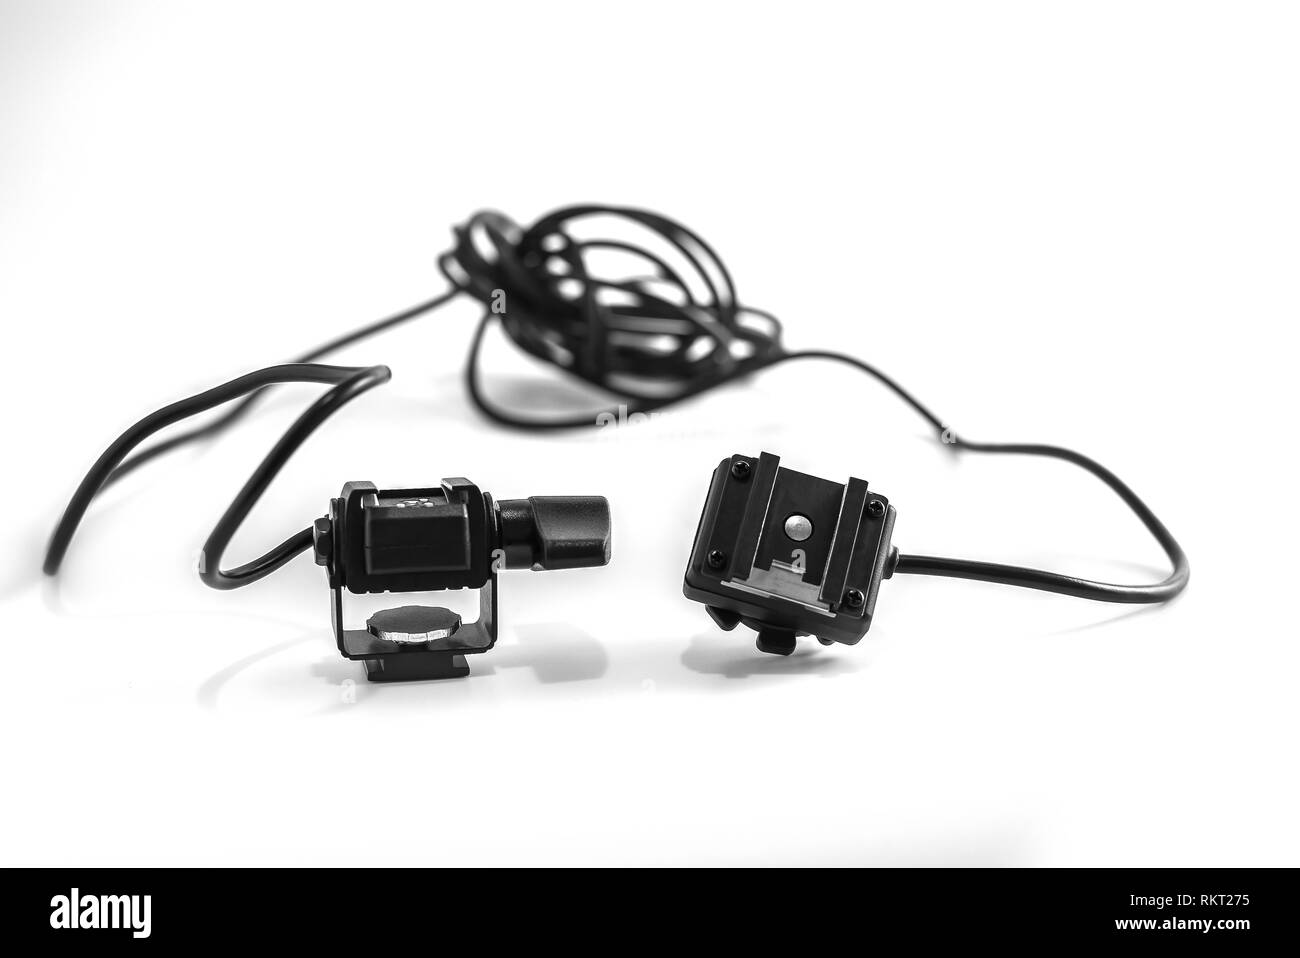 Primo piano dettaglio di un flash professionale del connettore per il cavo per il fotografo con un didital fotocamera reflex digitale, isolati su sfondo bianco. Foto Stock